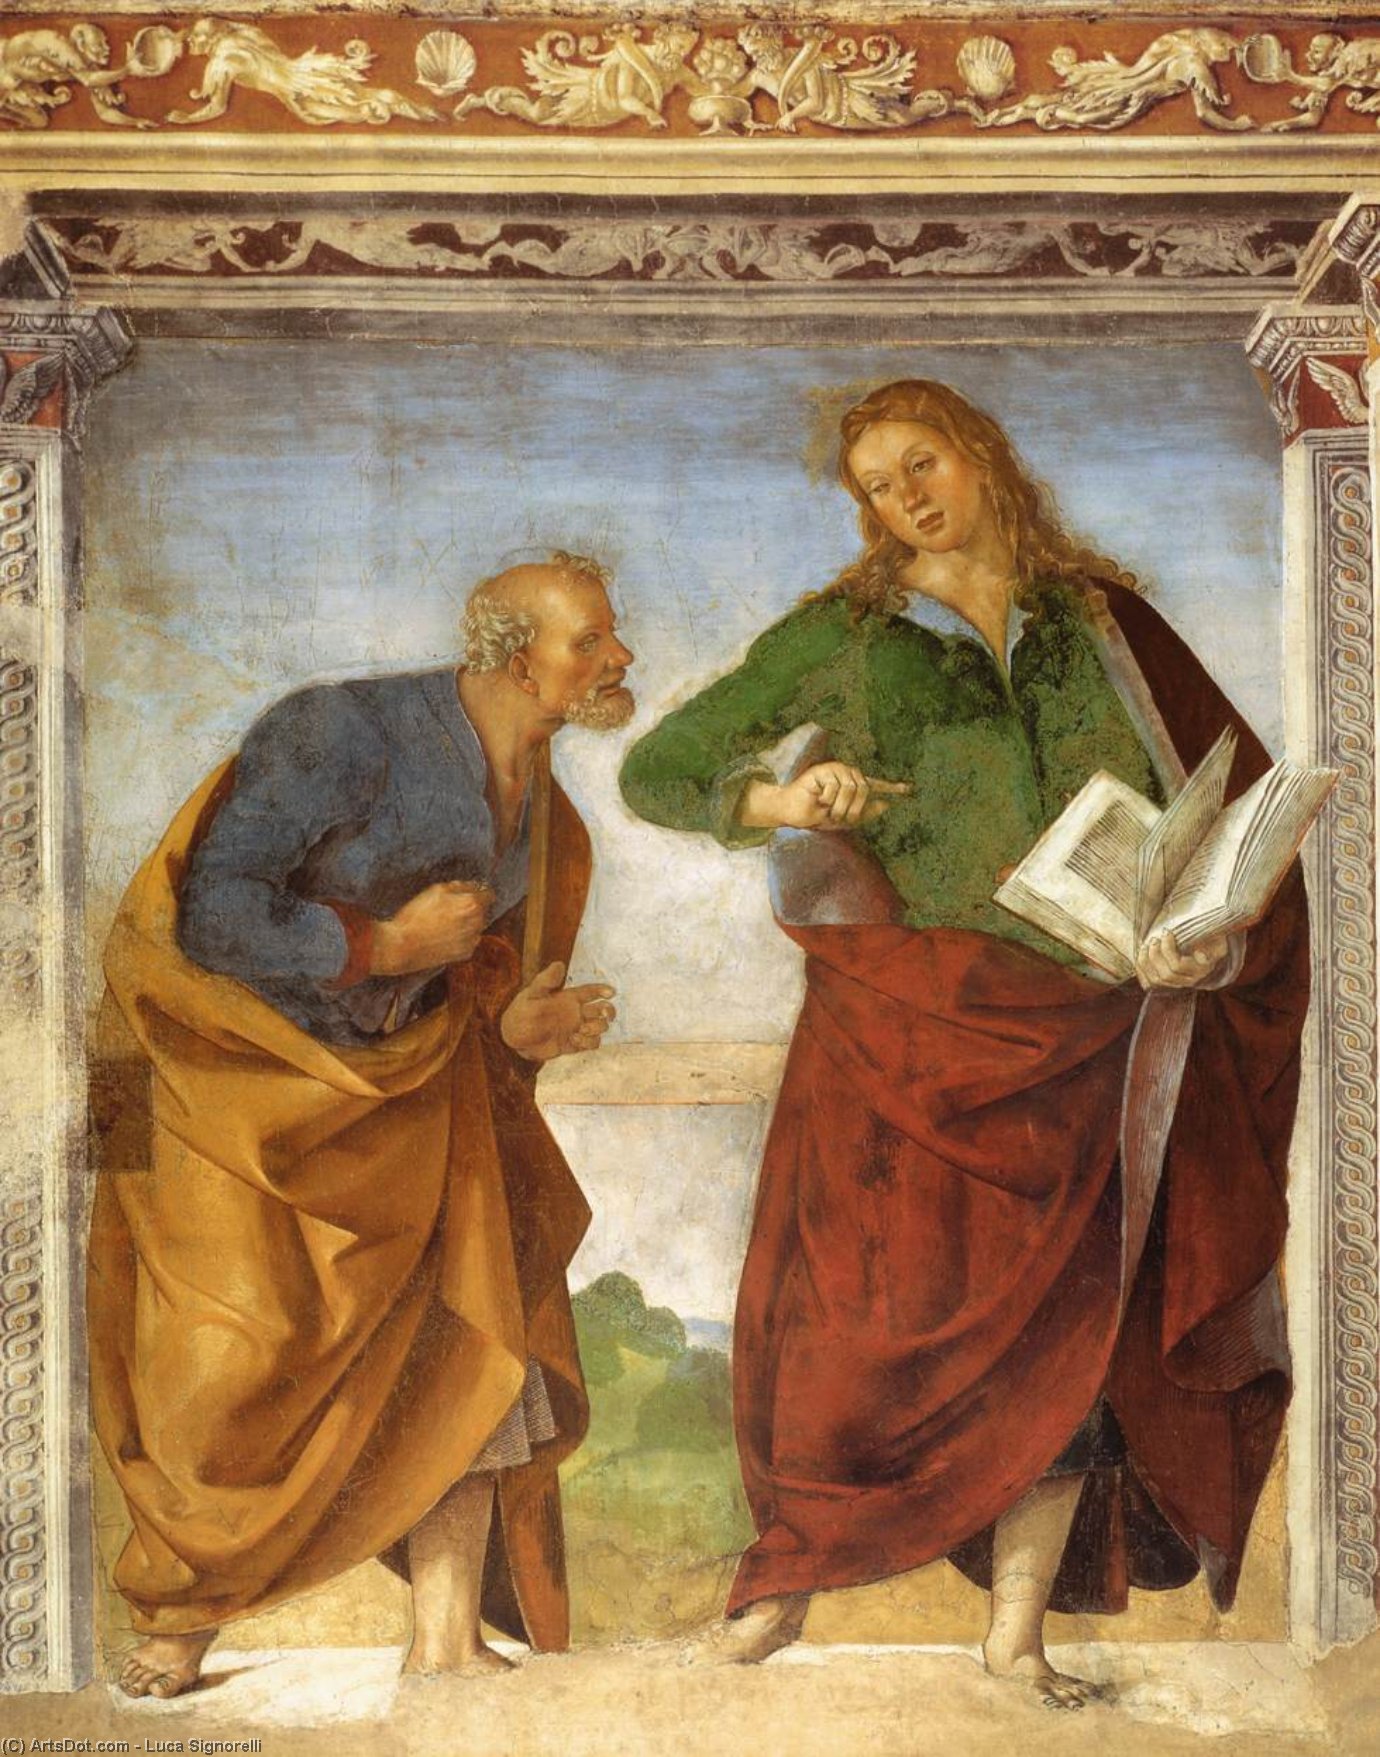 WikiOO.org - אנציקלופדיה לאמנויות יפות - ציור, יצירות אמנות Luca Signorelli - The Apostles Peter and John the Evangelist